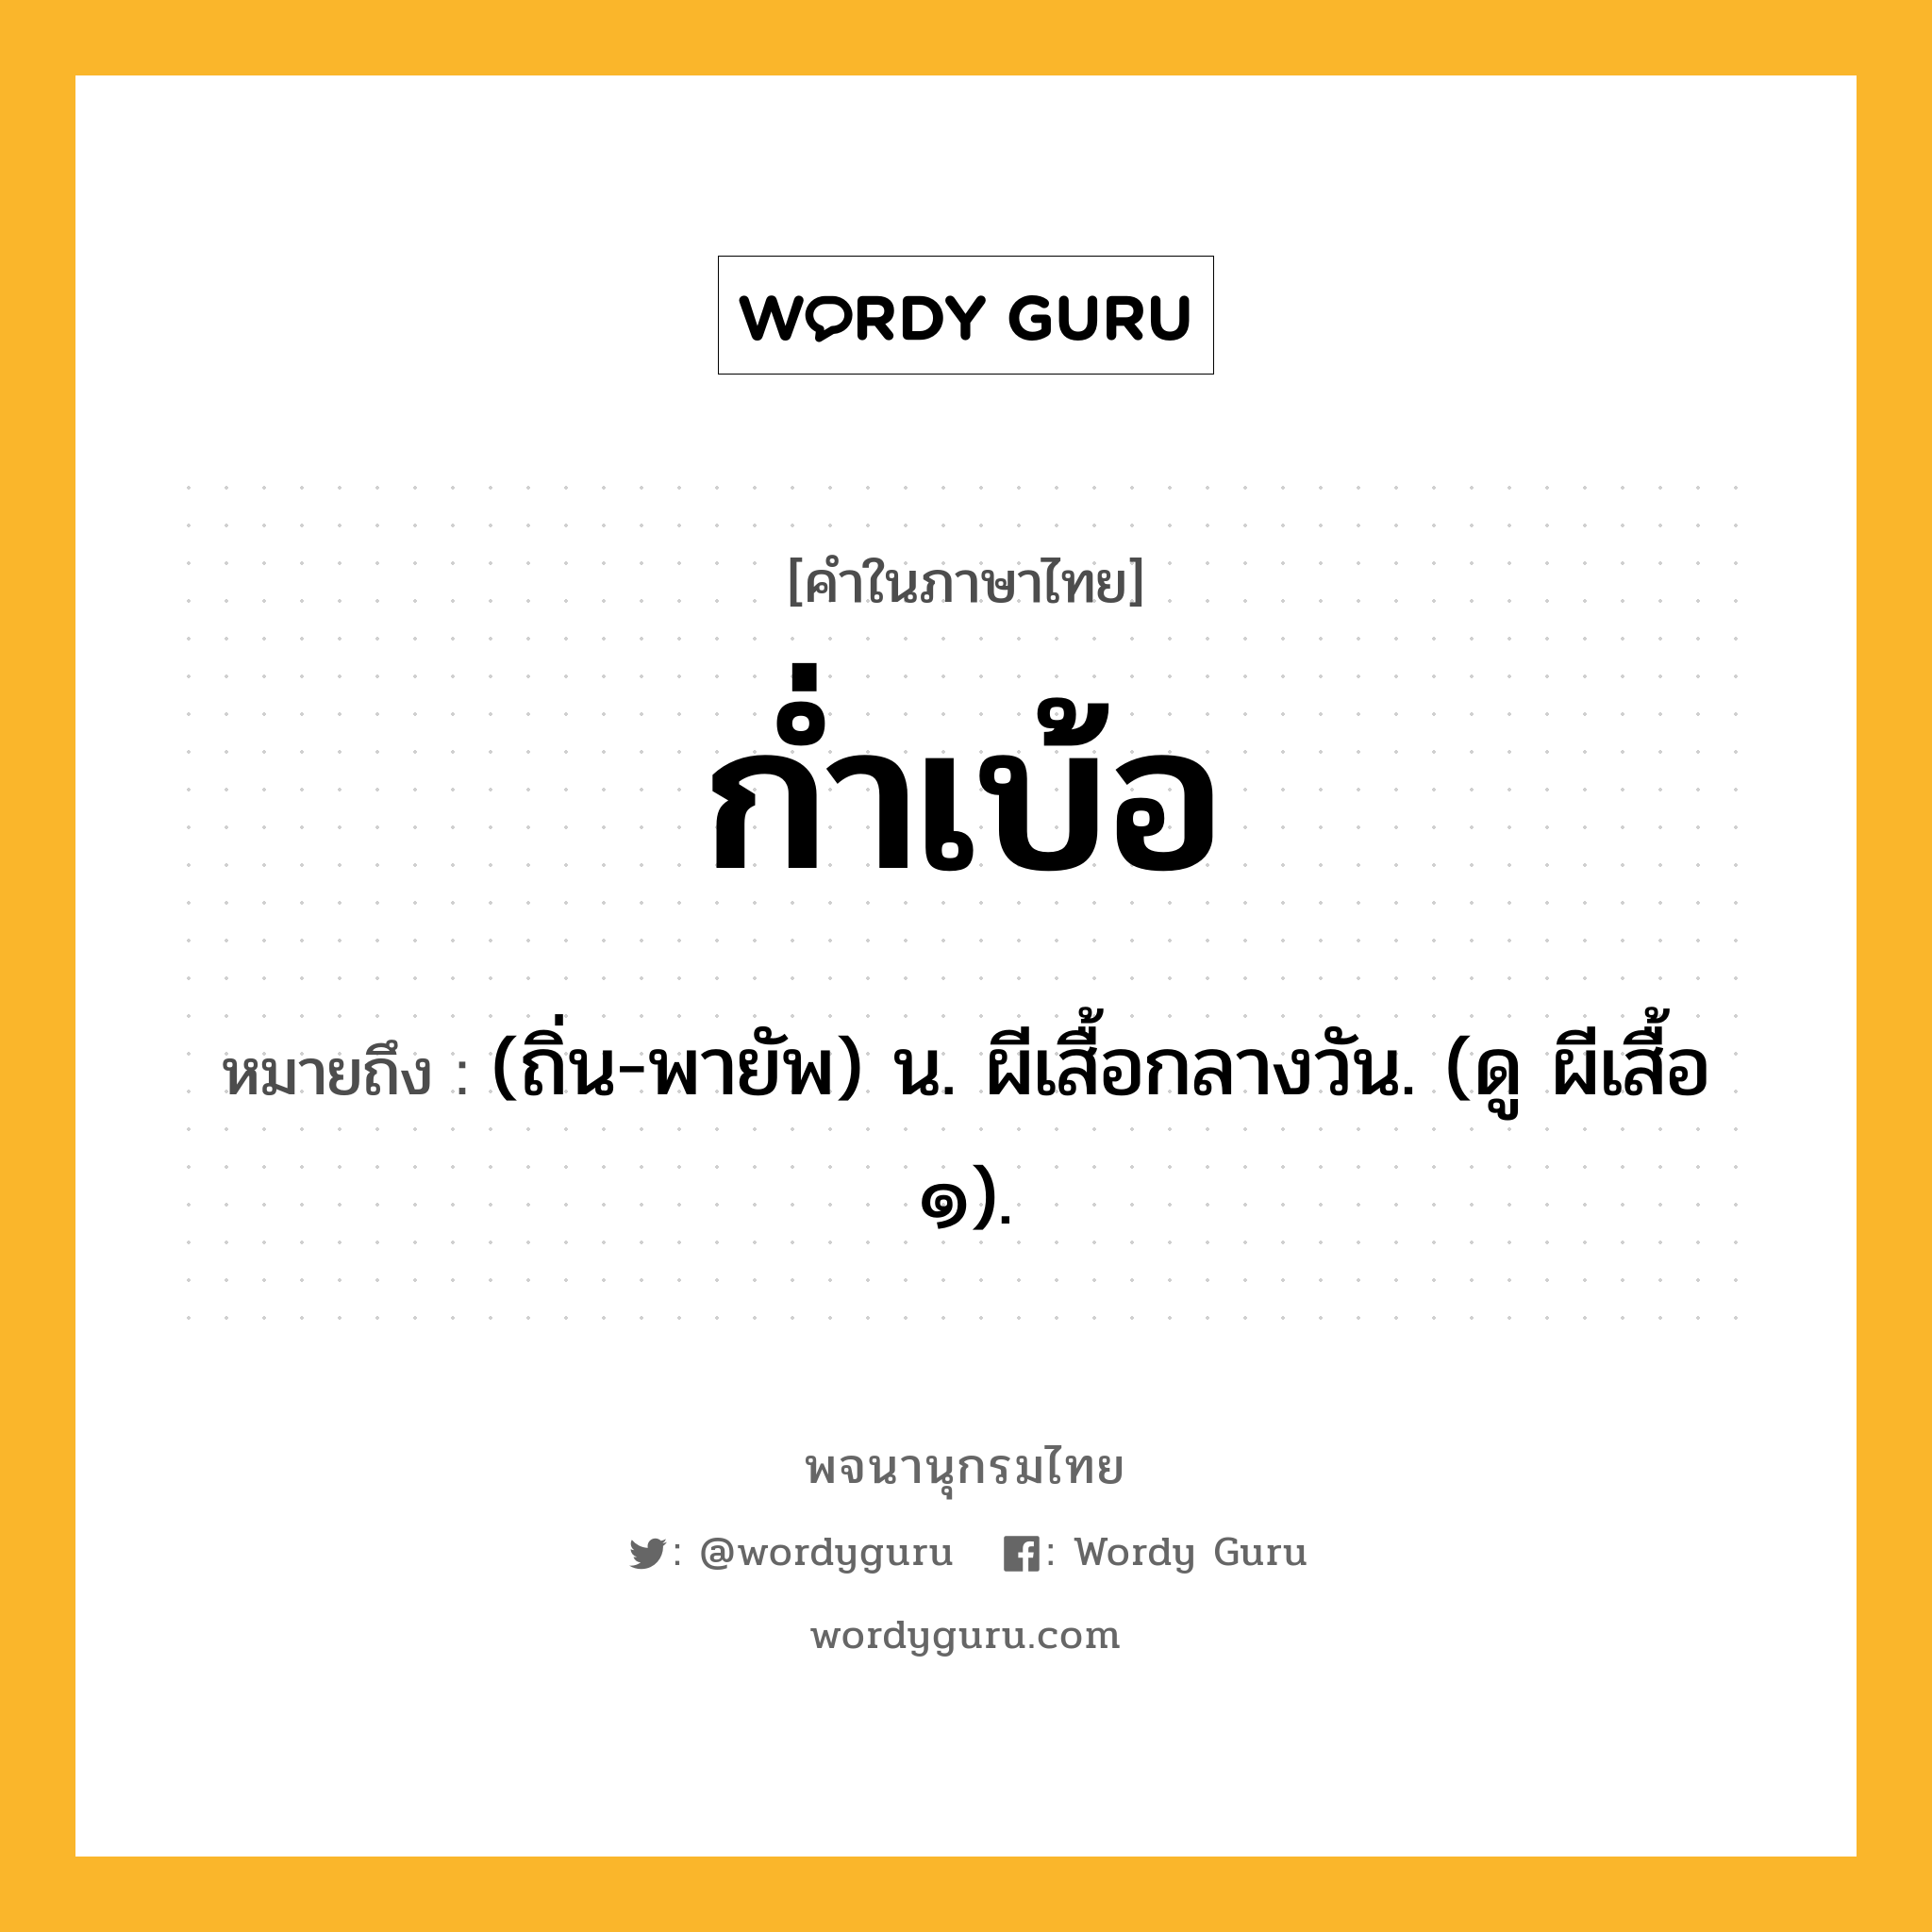 ก่ำเบ้อ หมายถึงอะไร?, คำในภาษาไทย ก่ำเบ้อ หมายถึง (ถิ่น-พายัพ) น. ผีเสื้อกลางวัน. (ดู ผีเสื้อ ๑).